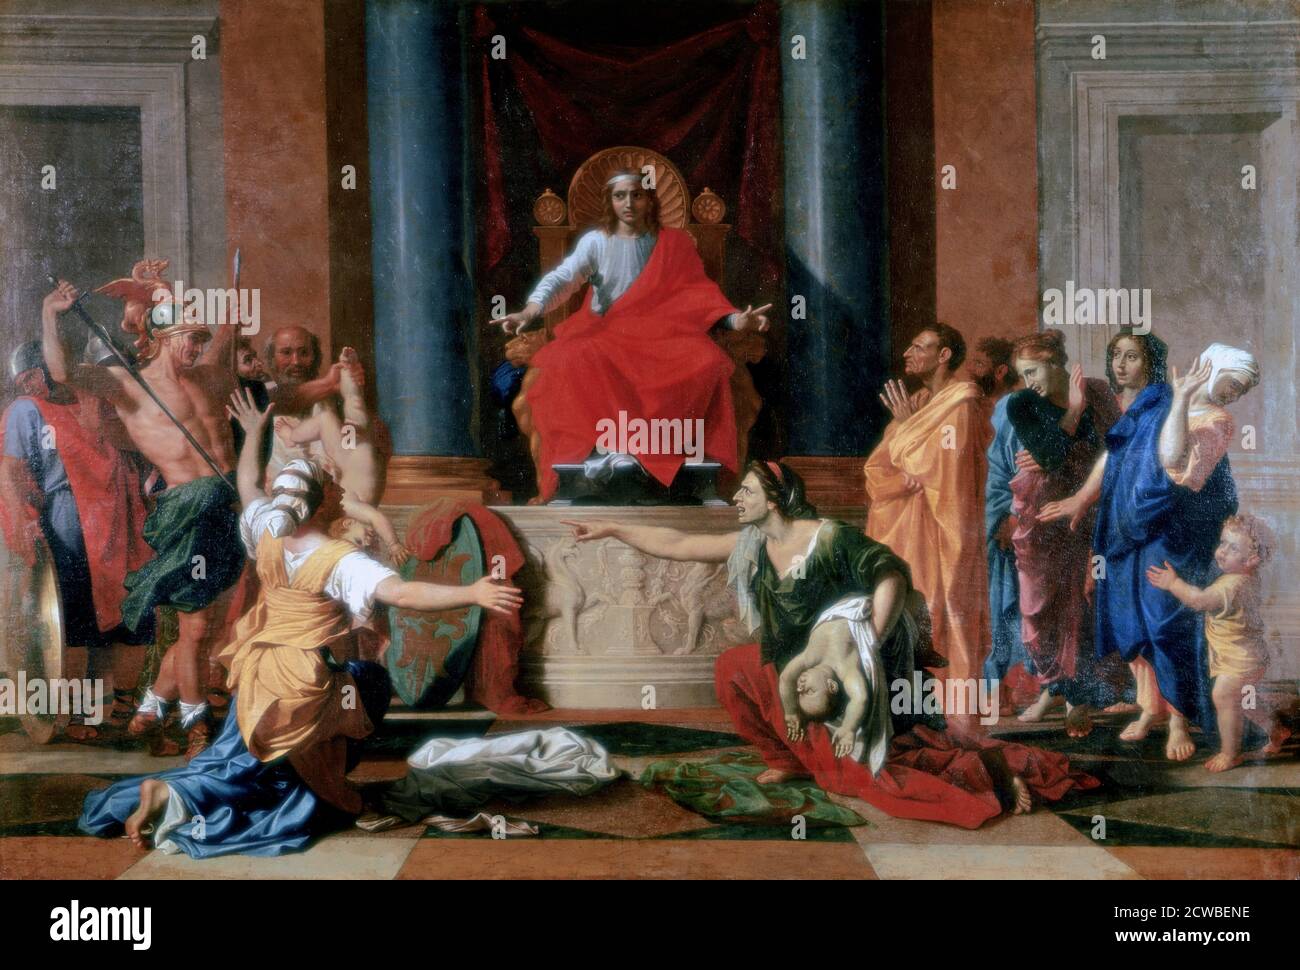 Le jugement de Salomon, 1649. Artiste: Nicolas Poussin. Nicolas Poussin (1594-1665) est le principal peintre du style baroque français classique. La plupart de ses travaux portaient sur des sujets religieux et mythologiques. Banque D'Images